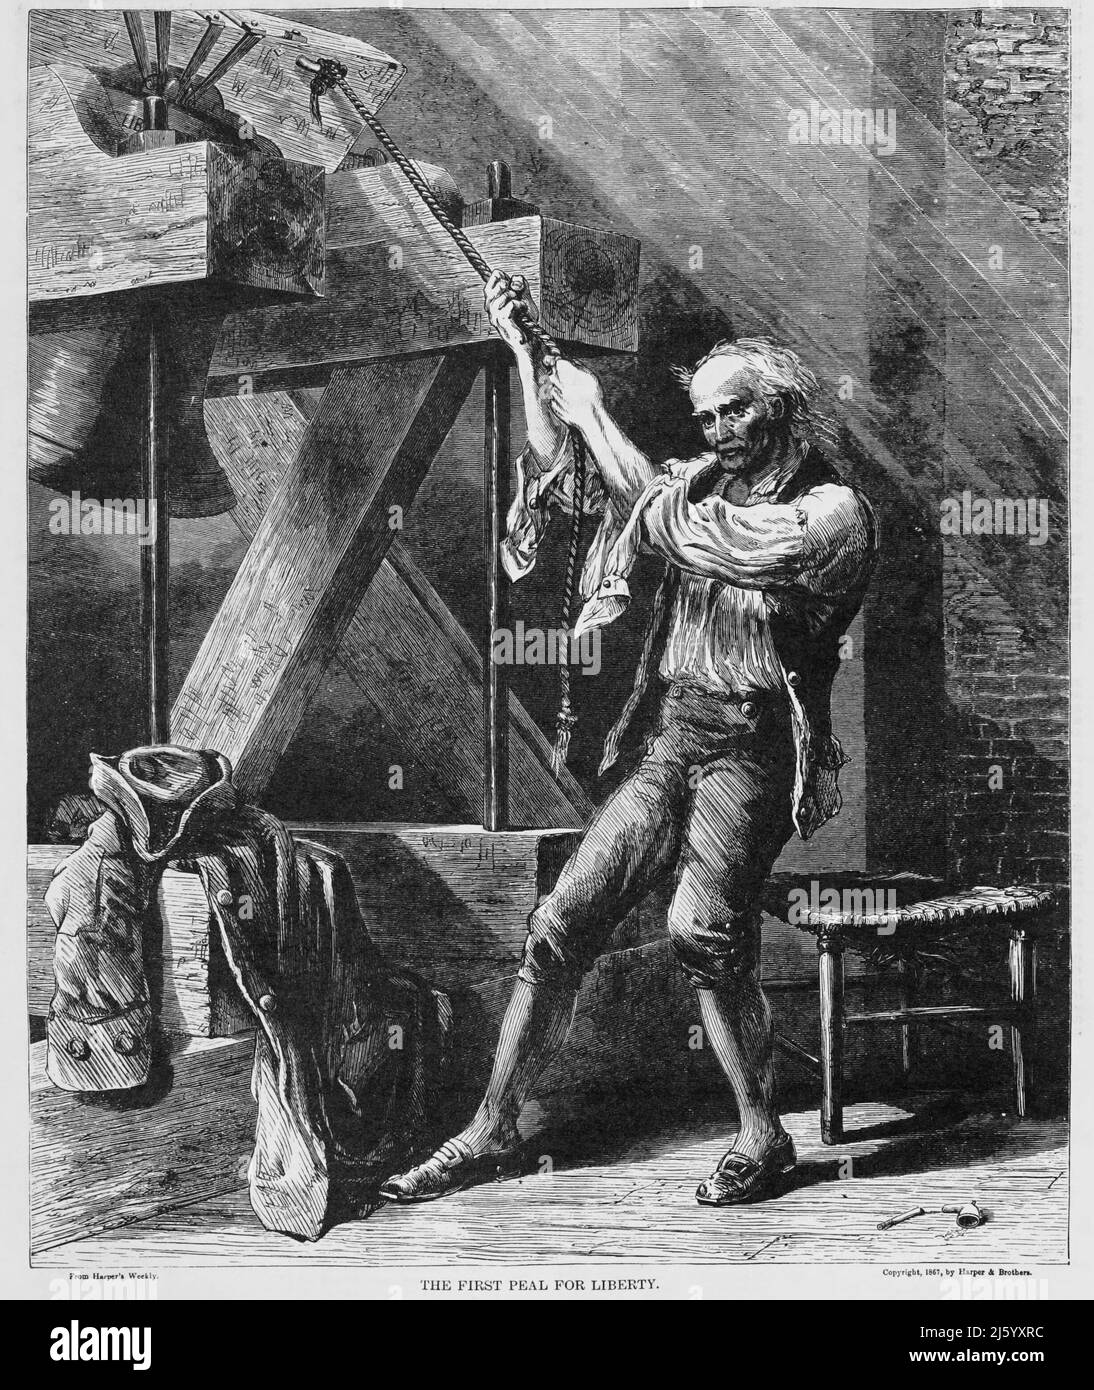 El primer Peal por la Libertad en la Guerra Revolucionaria Americana. ilustración del siglo 19th Foto de stock